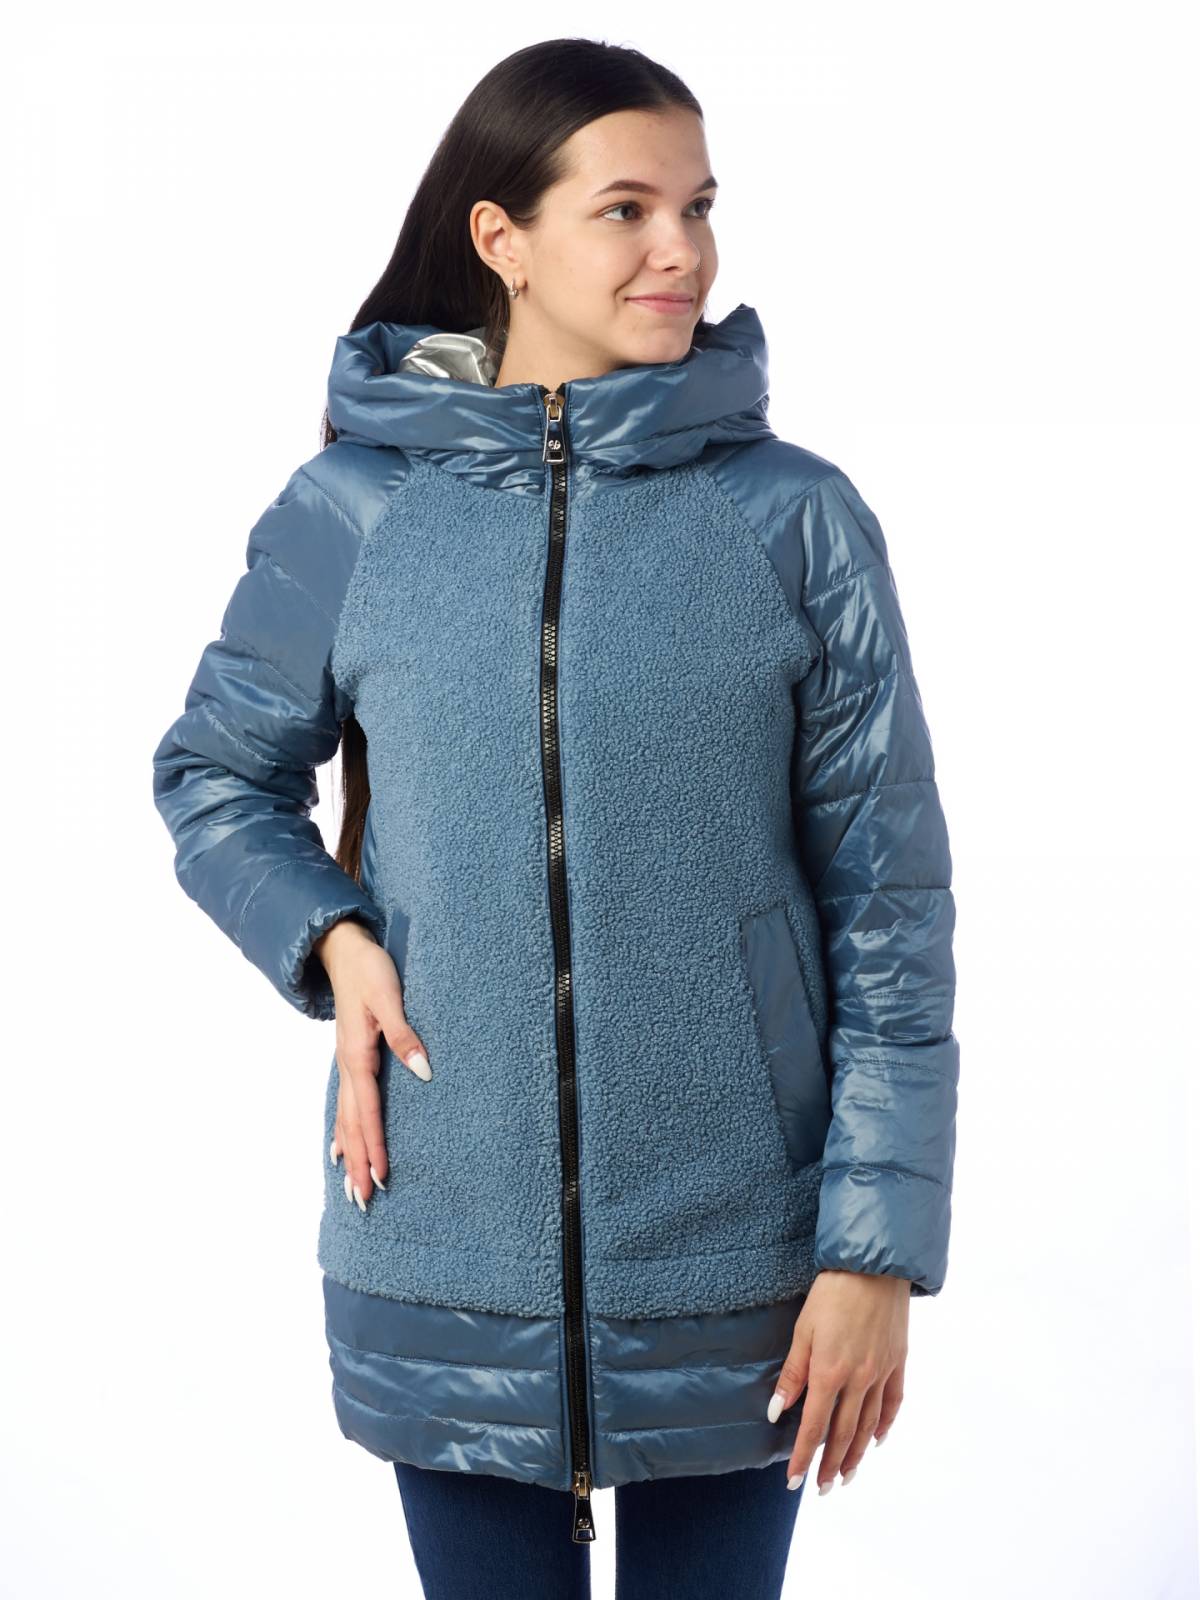 Куртка женская EVACANA 4003 синяя 48 RU